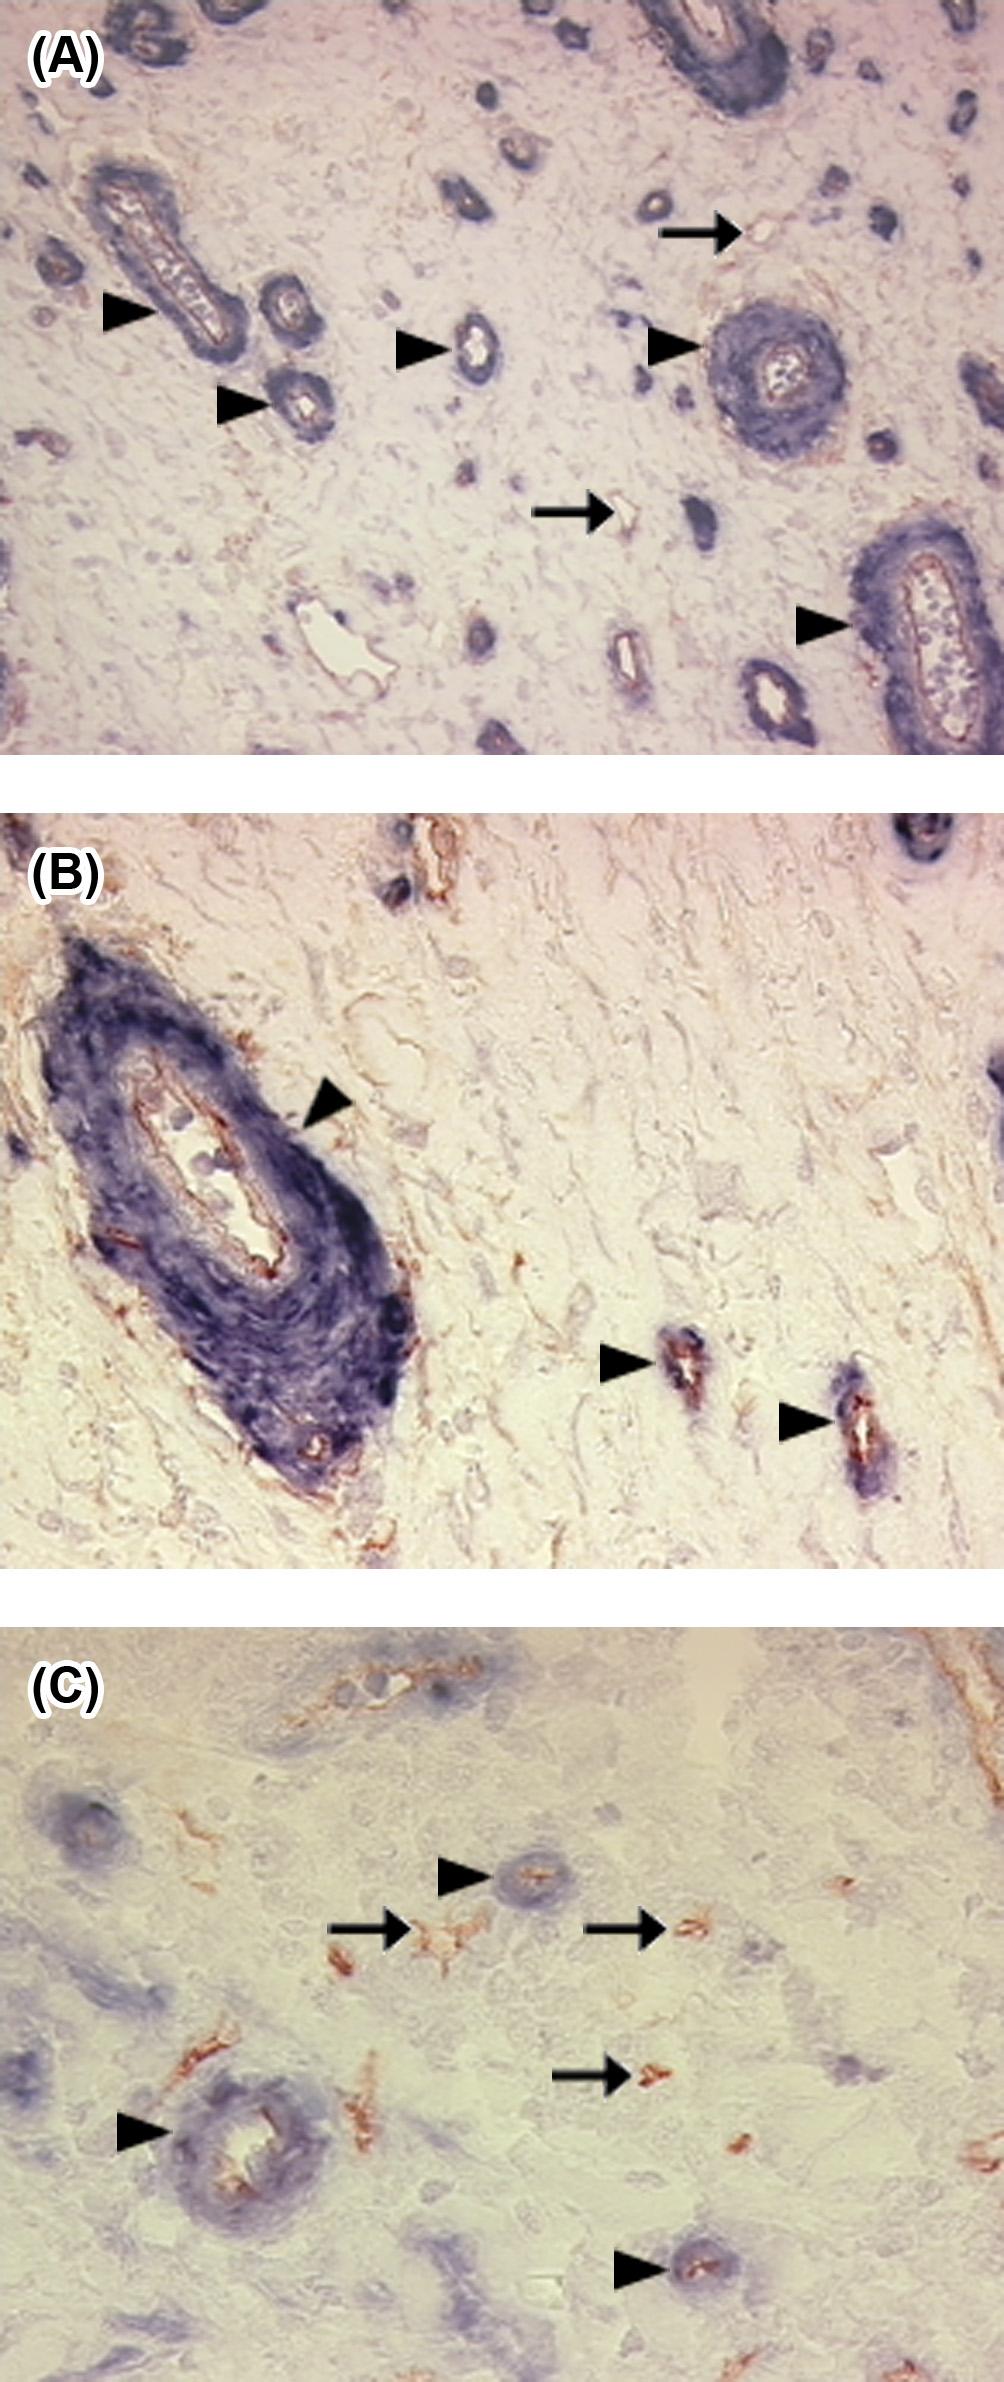 Abbildung 6: Immunhistochemische Darstellung der Gefäßmaturität. Darstellung des Perizytenbesatzes (MVM) mittels immunhistochemischer Doppelfärbung gegen CD34 (Endothelzellen) und α-sma (Perizyten).